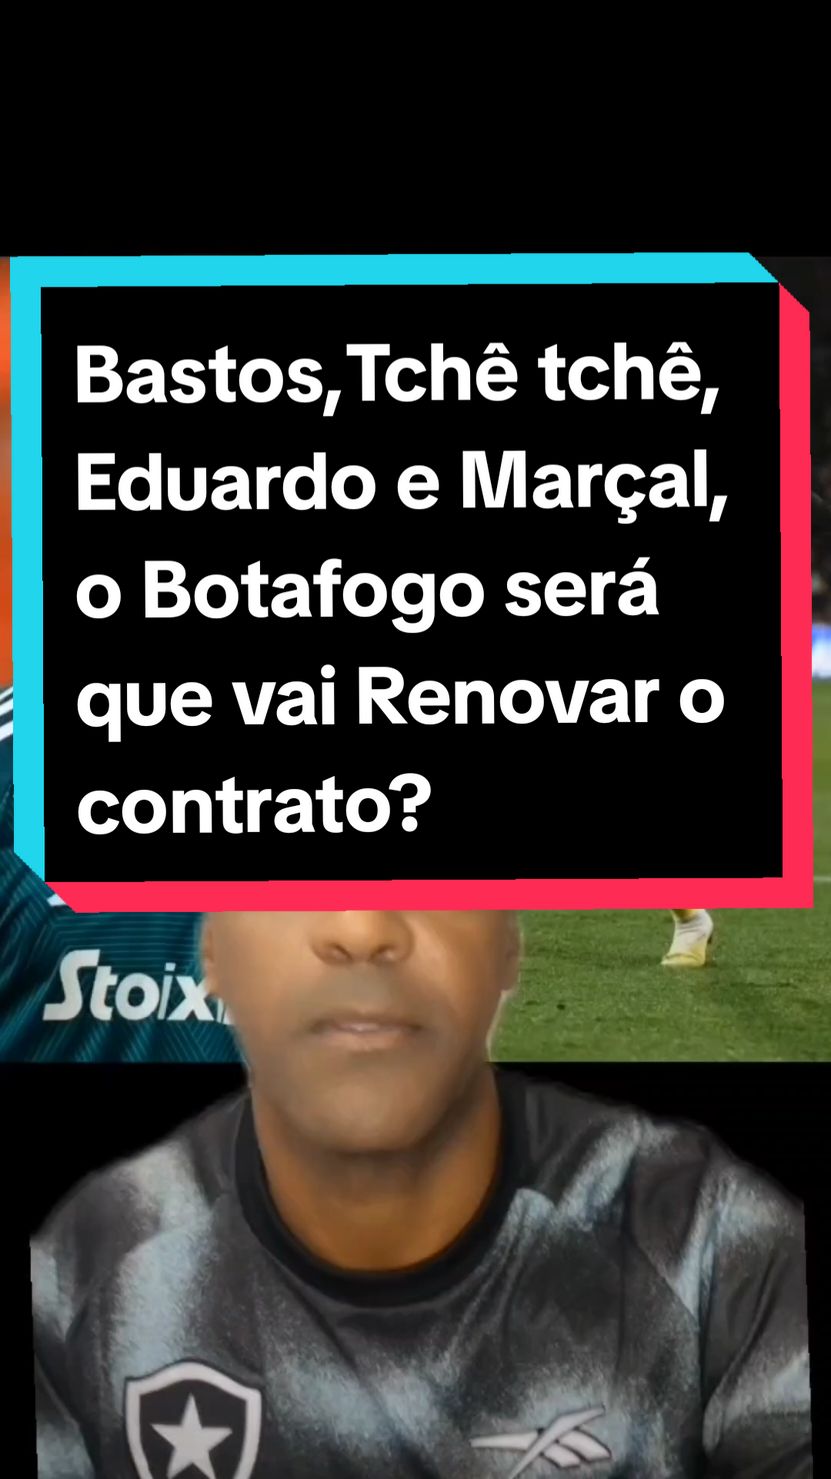 Bastos, tchê tchê, Eduardo e Marçal, será que o Botafogo vai renovar o contrato? @Botafogo  #botafogo🤍🖤🔥 #botafogooficial #botafogooficial #teamofogooo🔥⭐ #botafoguense #torcidabotafogo 